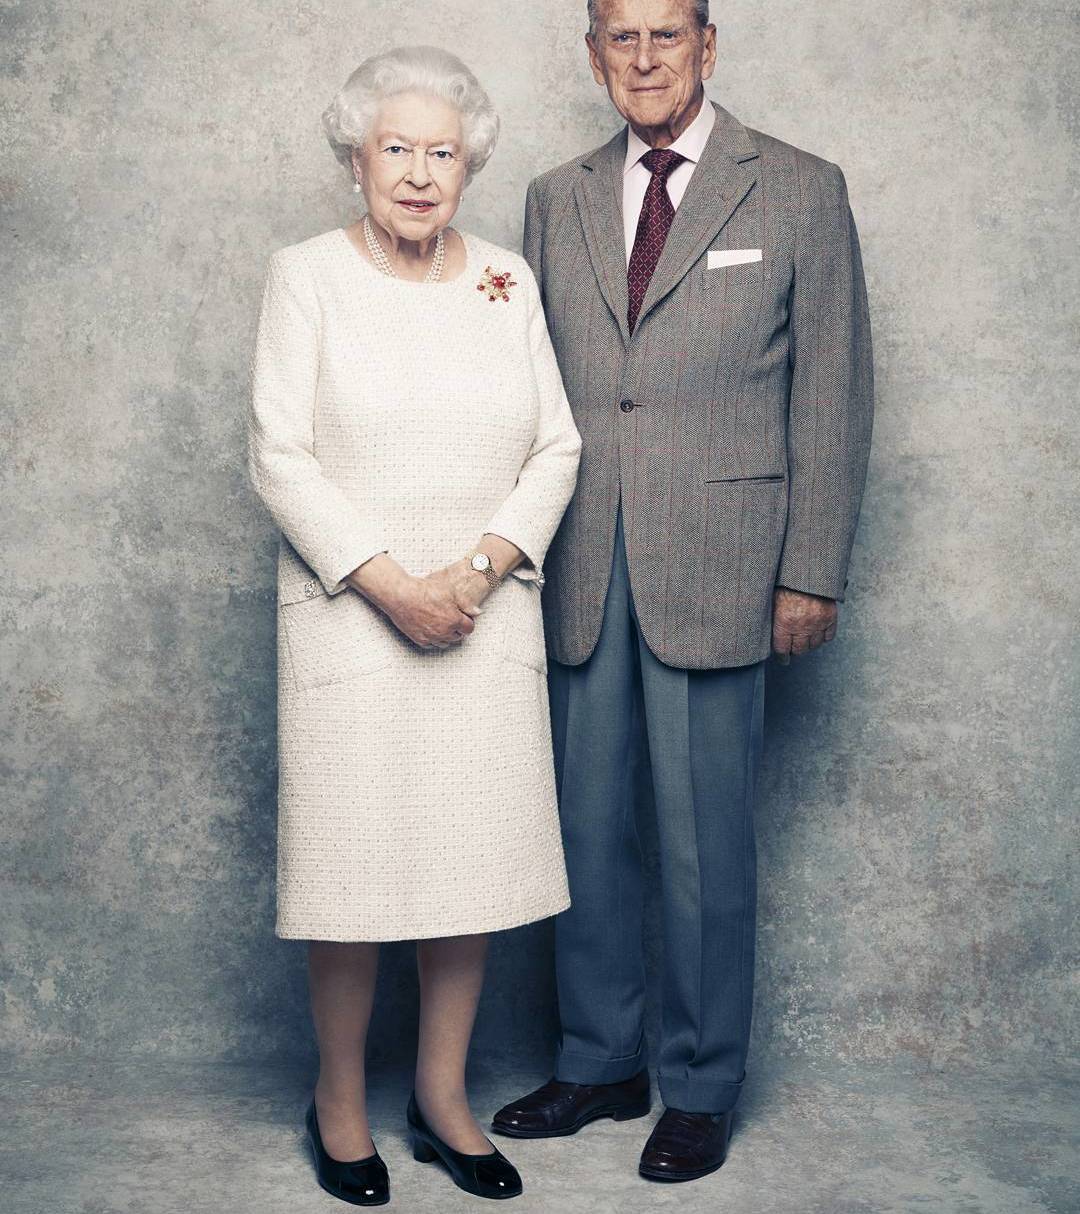 La regina Elisabetta e il principe Filippo, i 70 anni d'amore [FOTO]